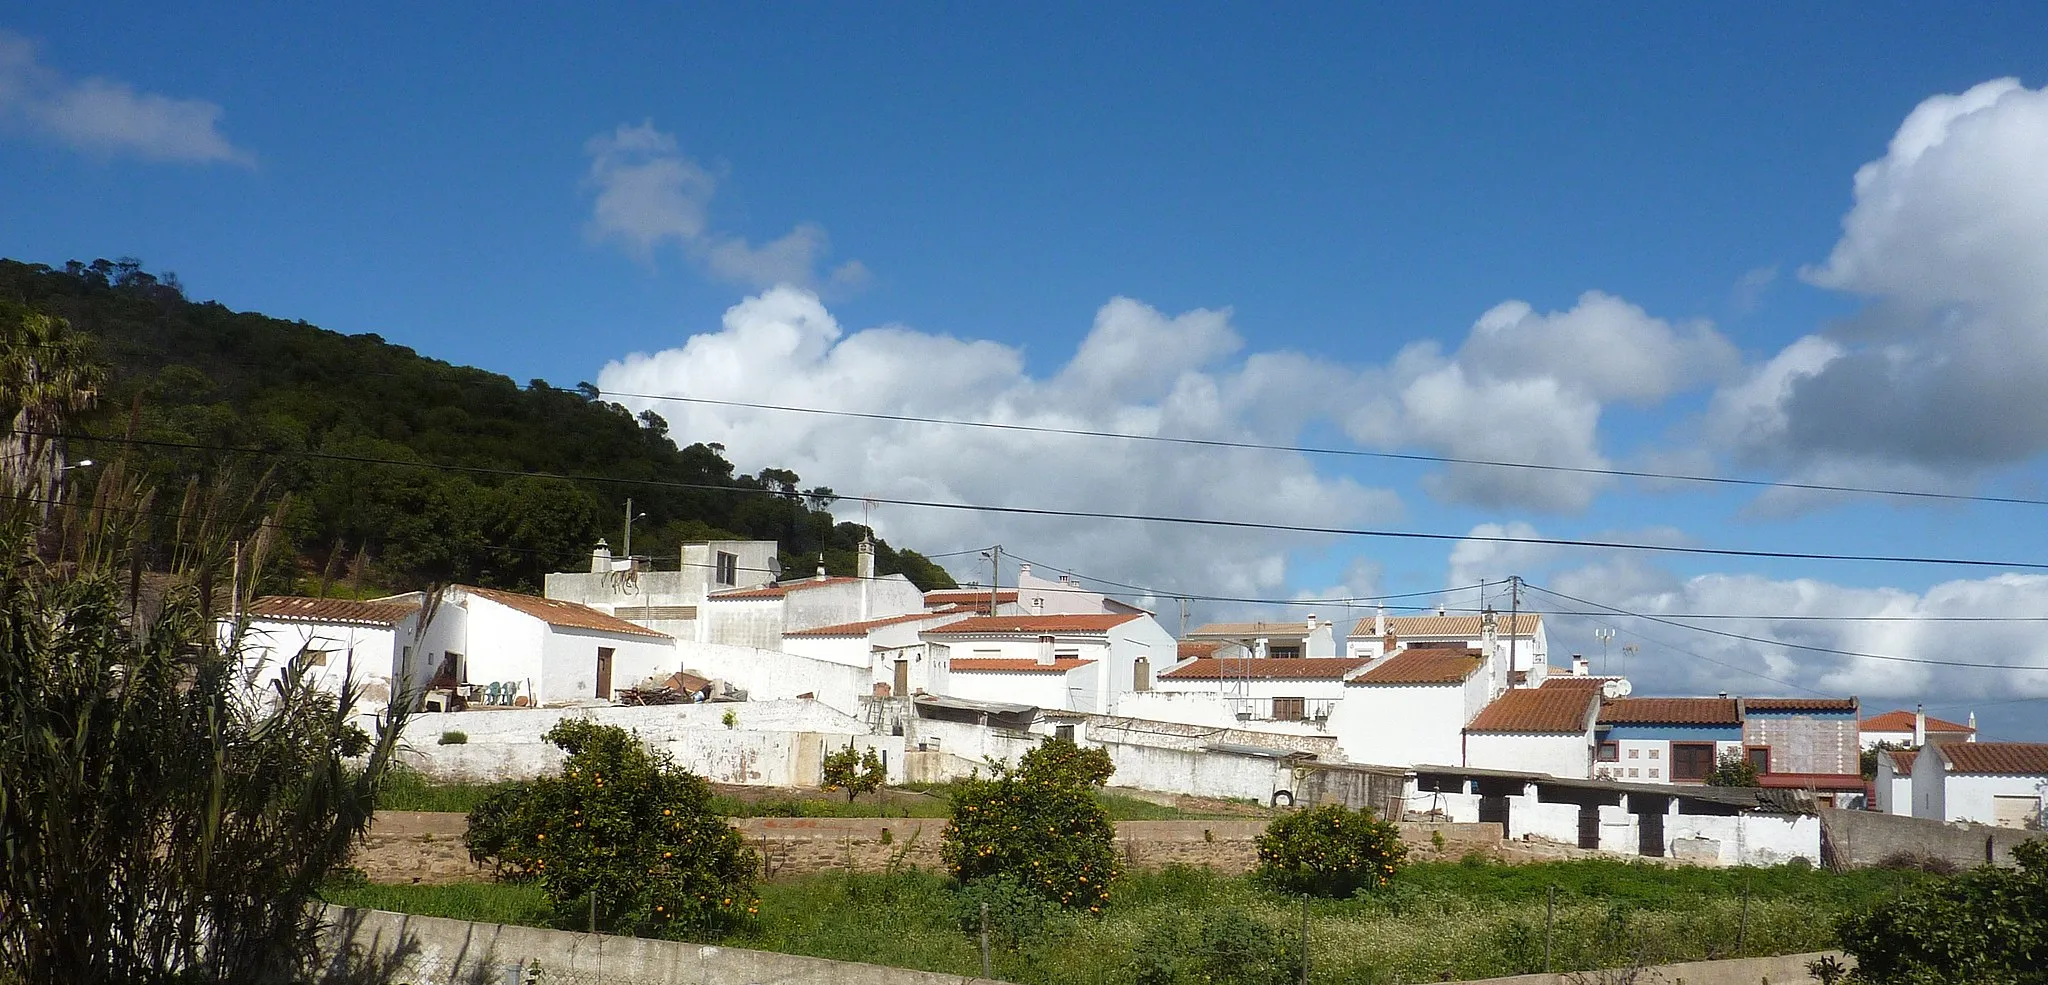 Photo showing: Portugal - Algarve - Barao de Sao Joao - rooftops